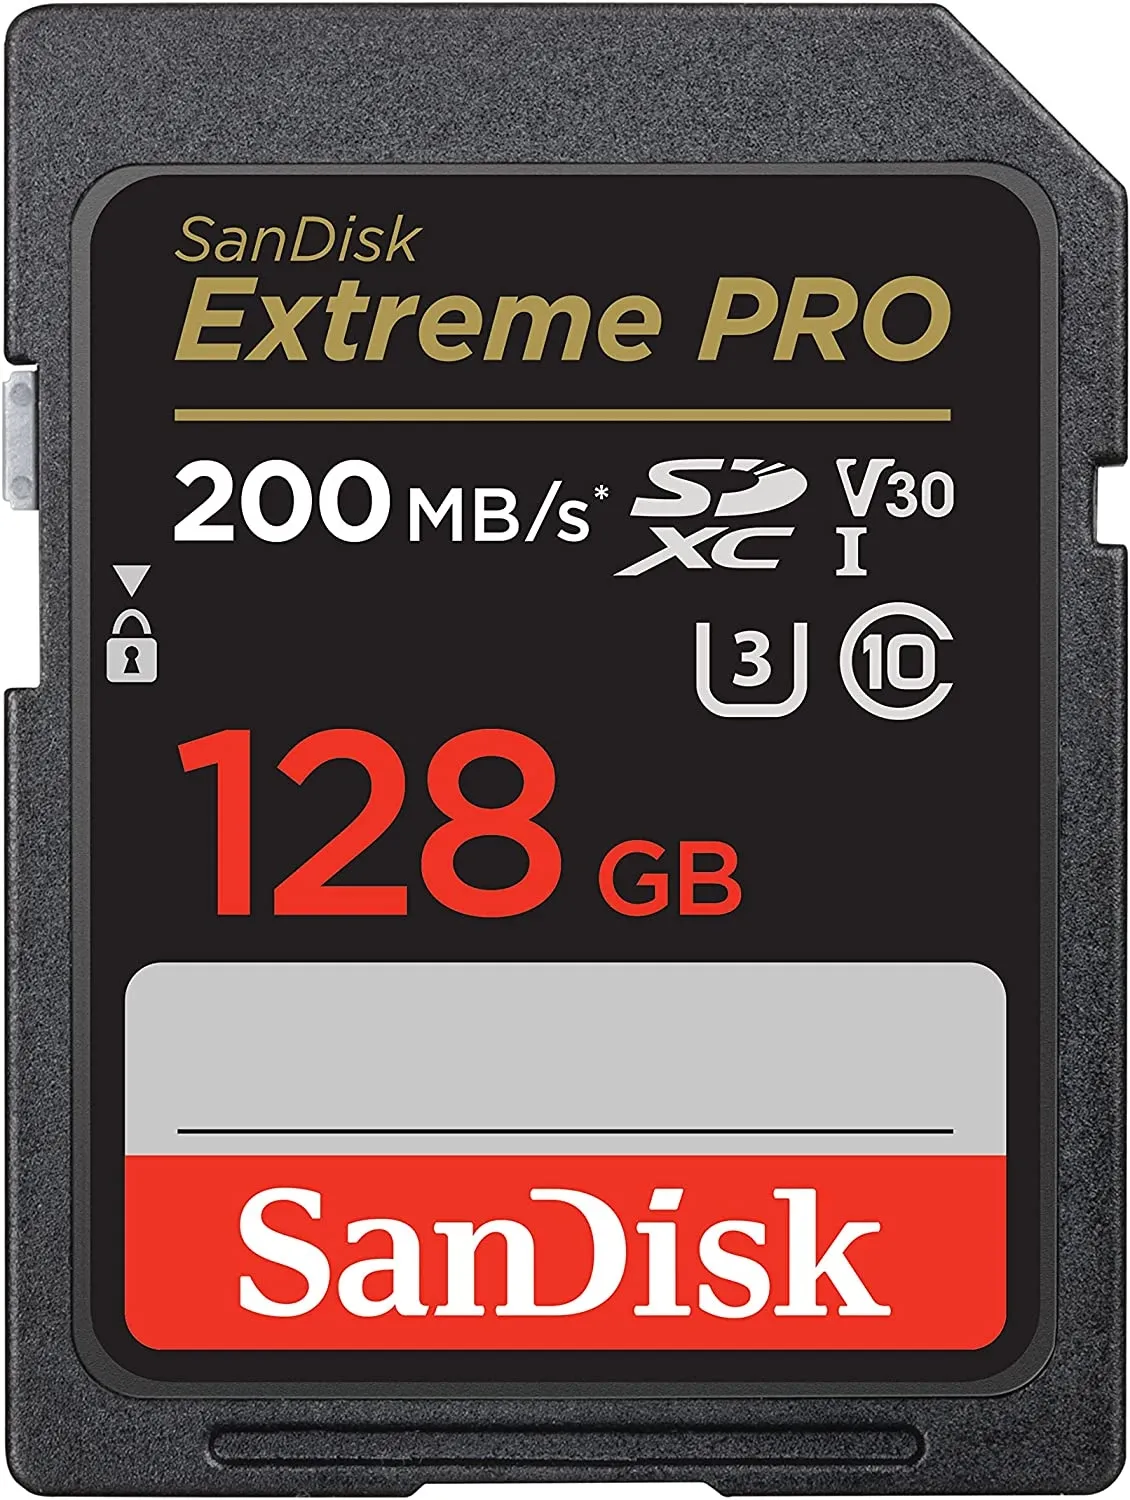 SanDisk SDSDXXD-128G-GN4IN